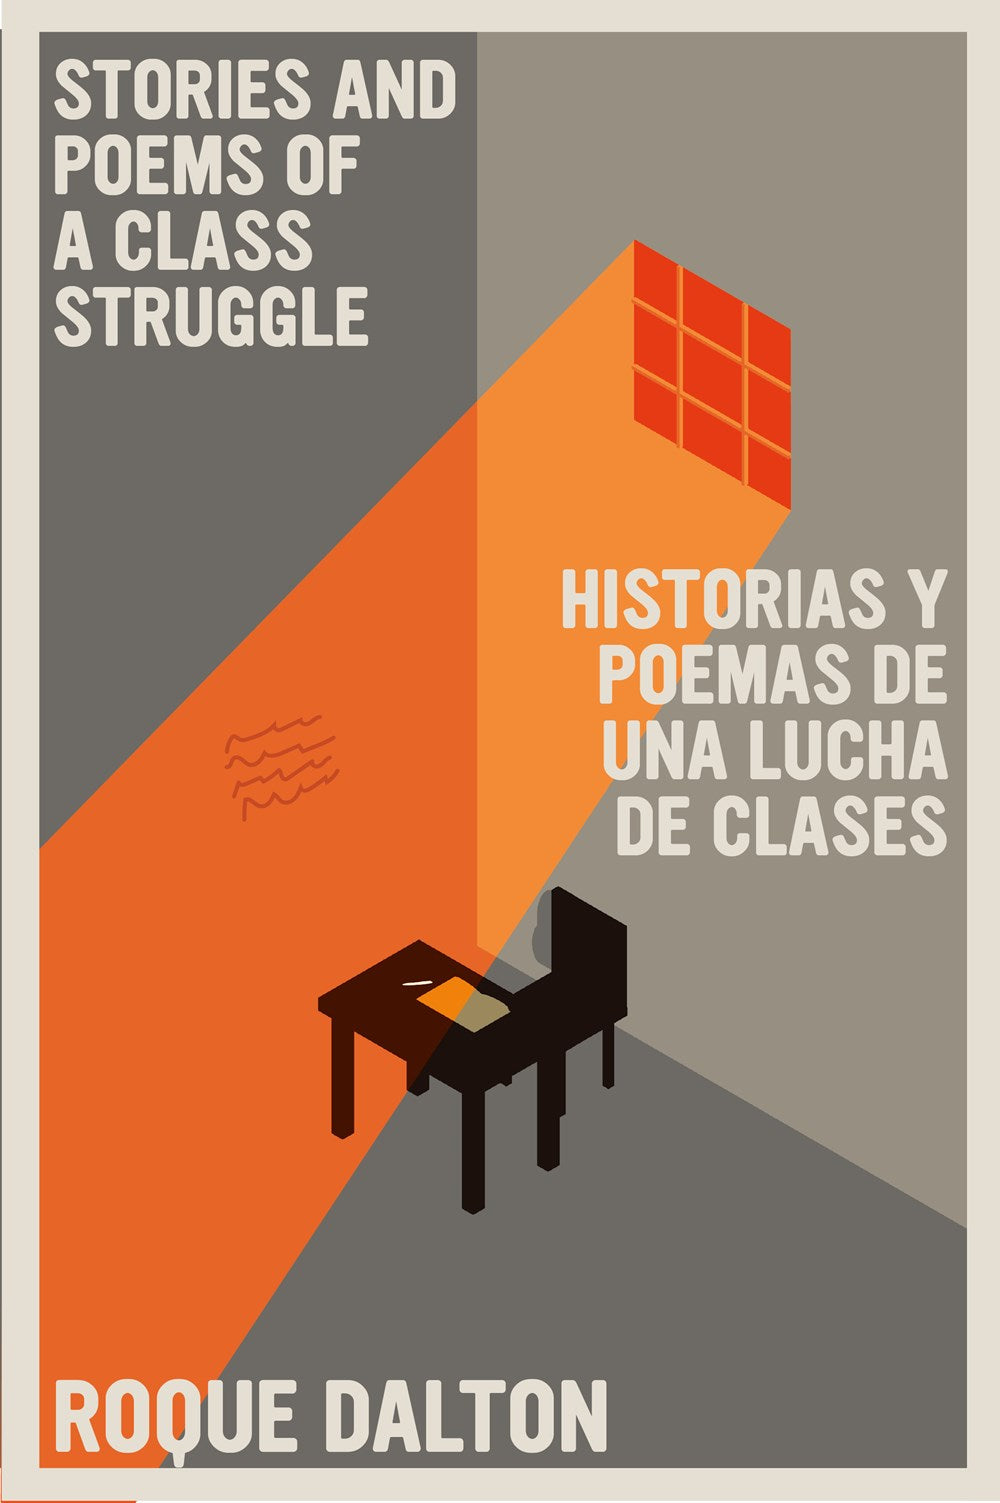 Stories and Poems of a Class Struggle / Historias y poemas de una lucha de clases by Roque Dalton